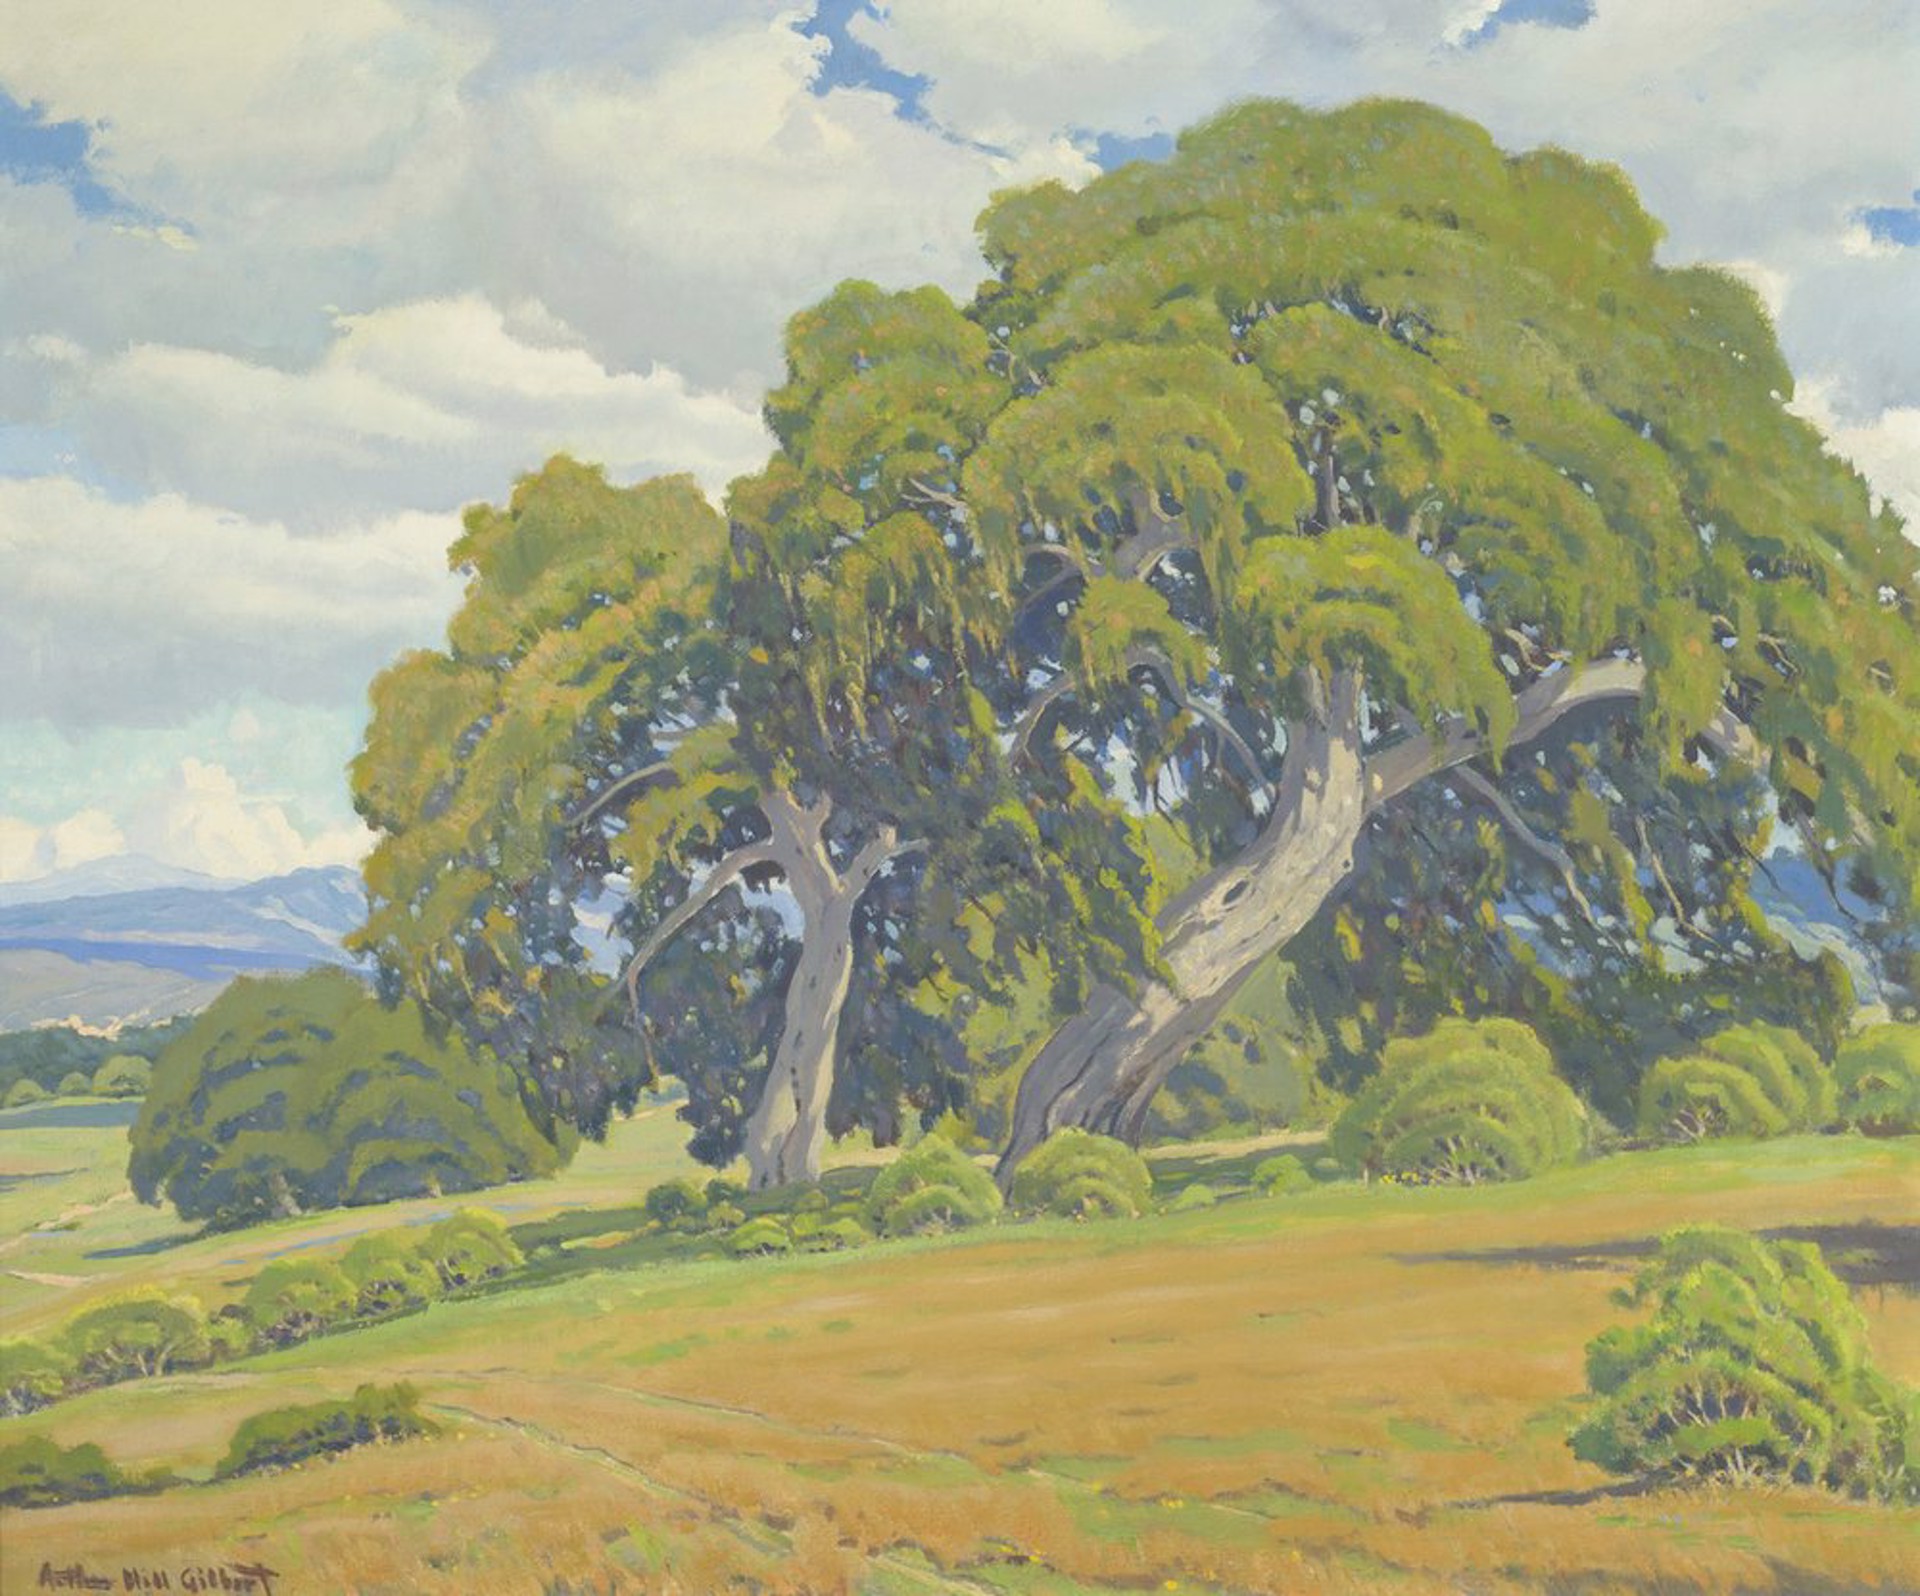 Monterey Oaks by Arthur Hill Gilbert